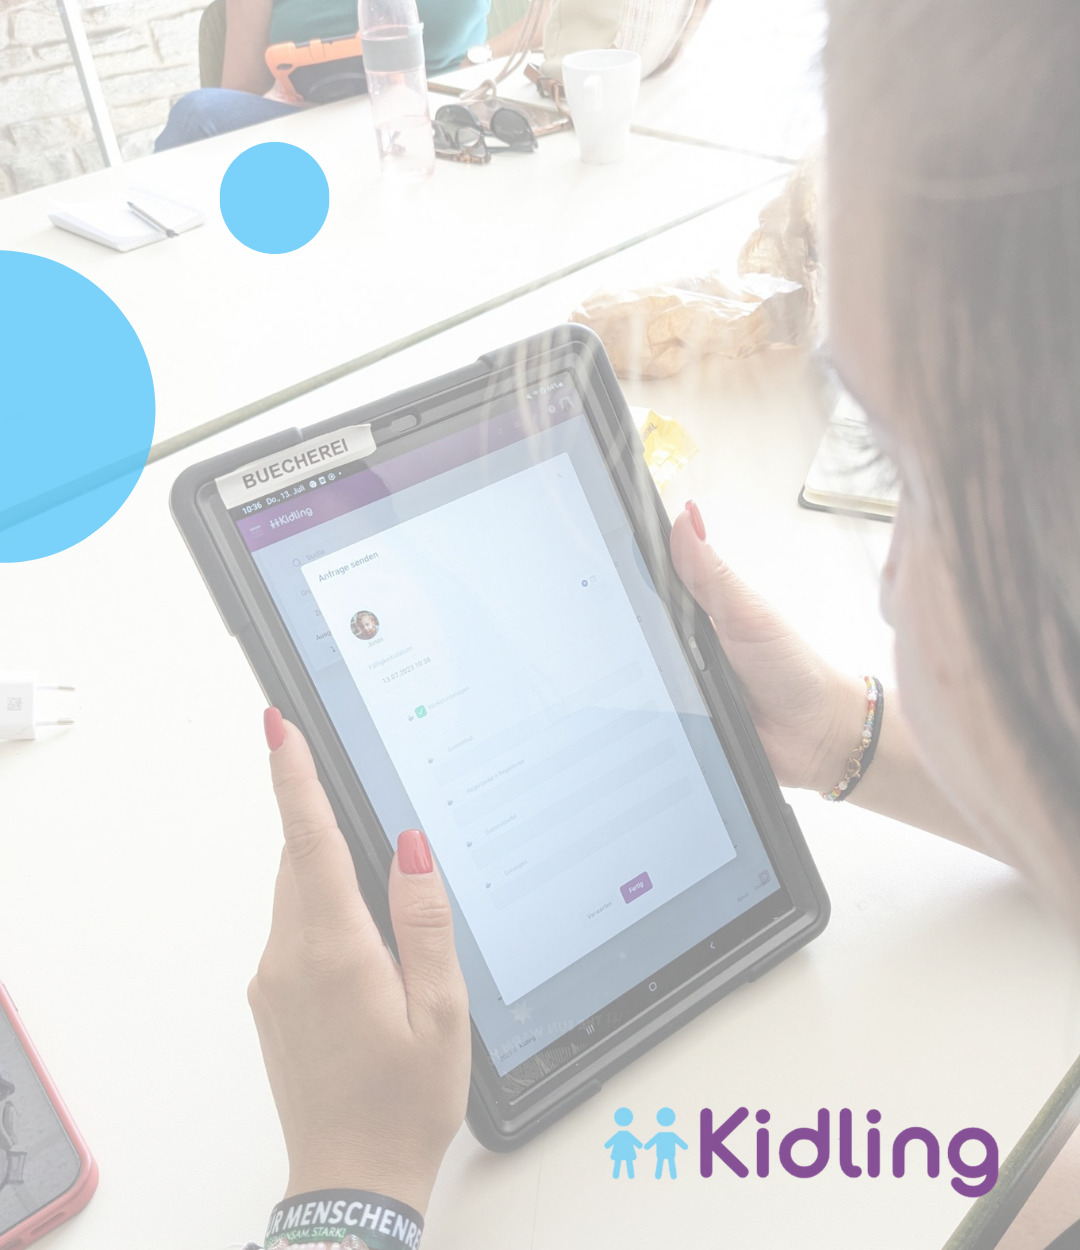 Kidling Kita App Kunden Schulung auf dem Tablet